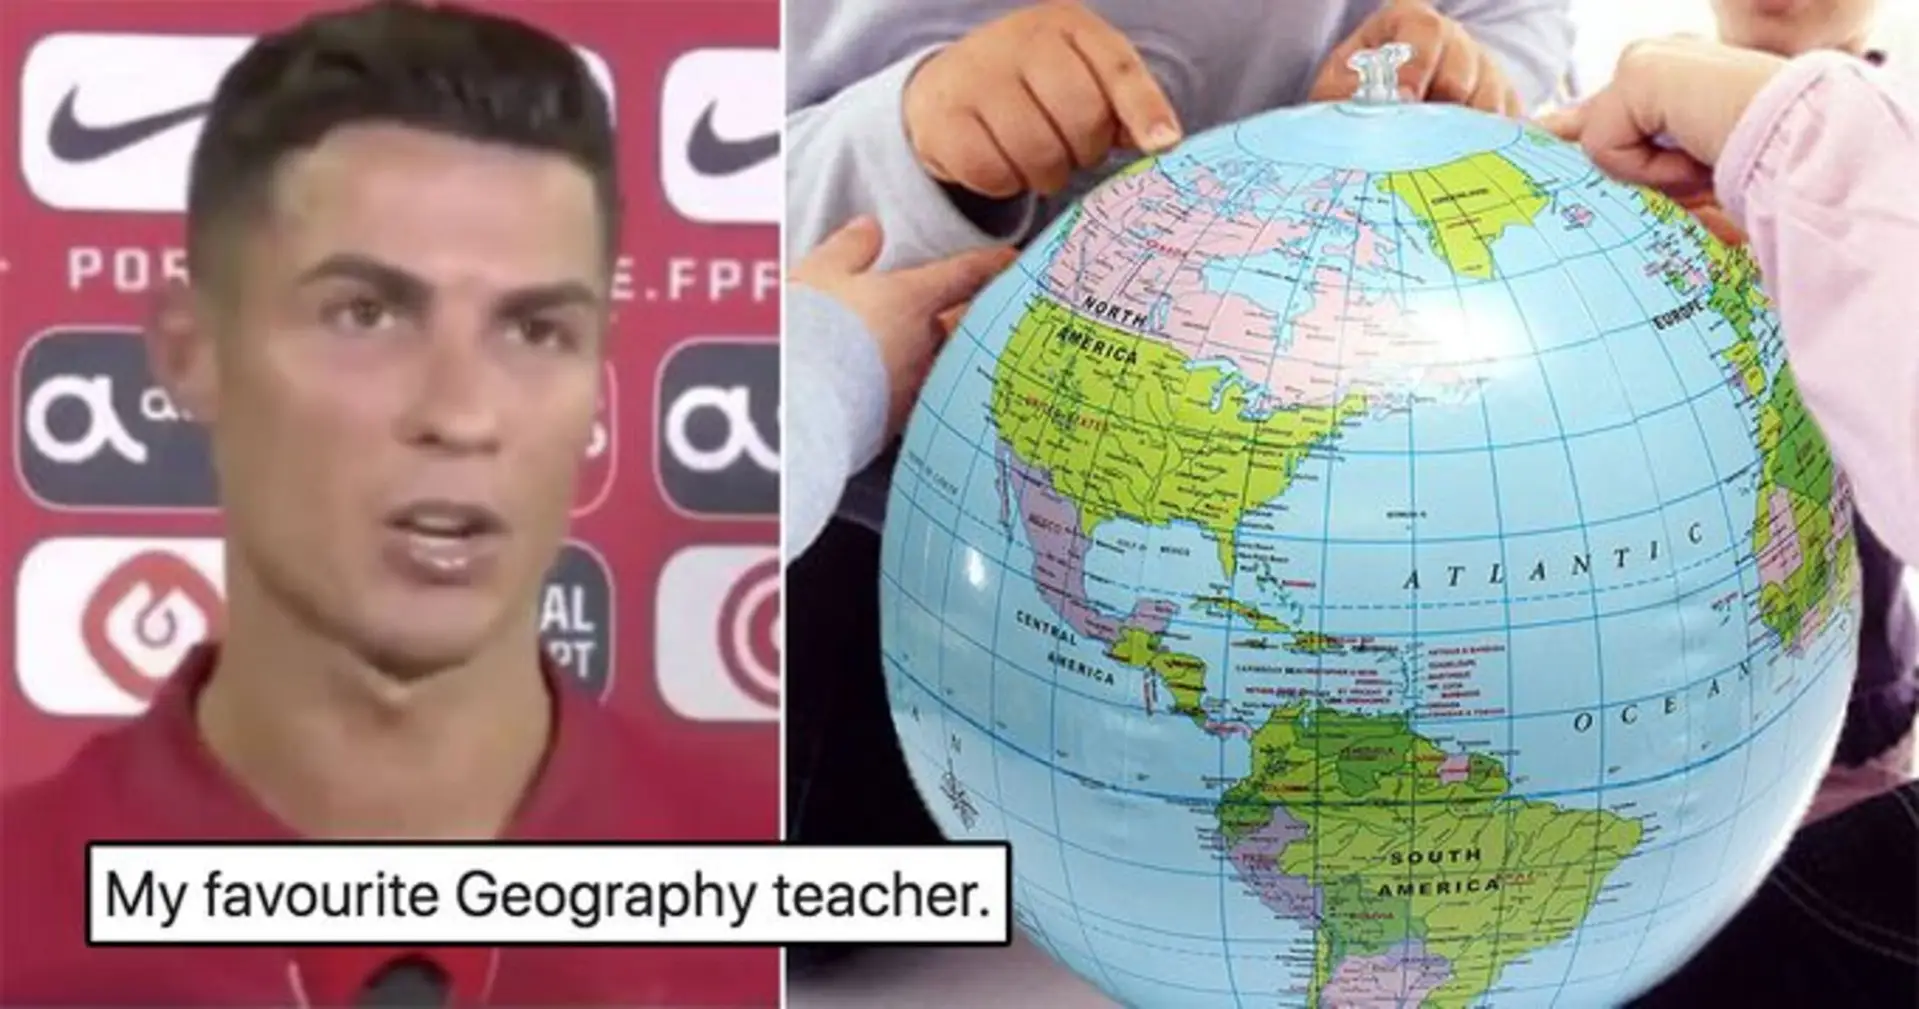 Warum einige Barca-Fans Cristiano Ronaldo als ihren "Lieblingsgeografielehrer" bezeichnen: Erklärt